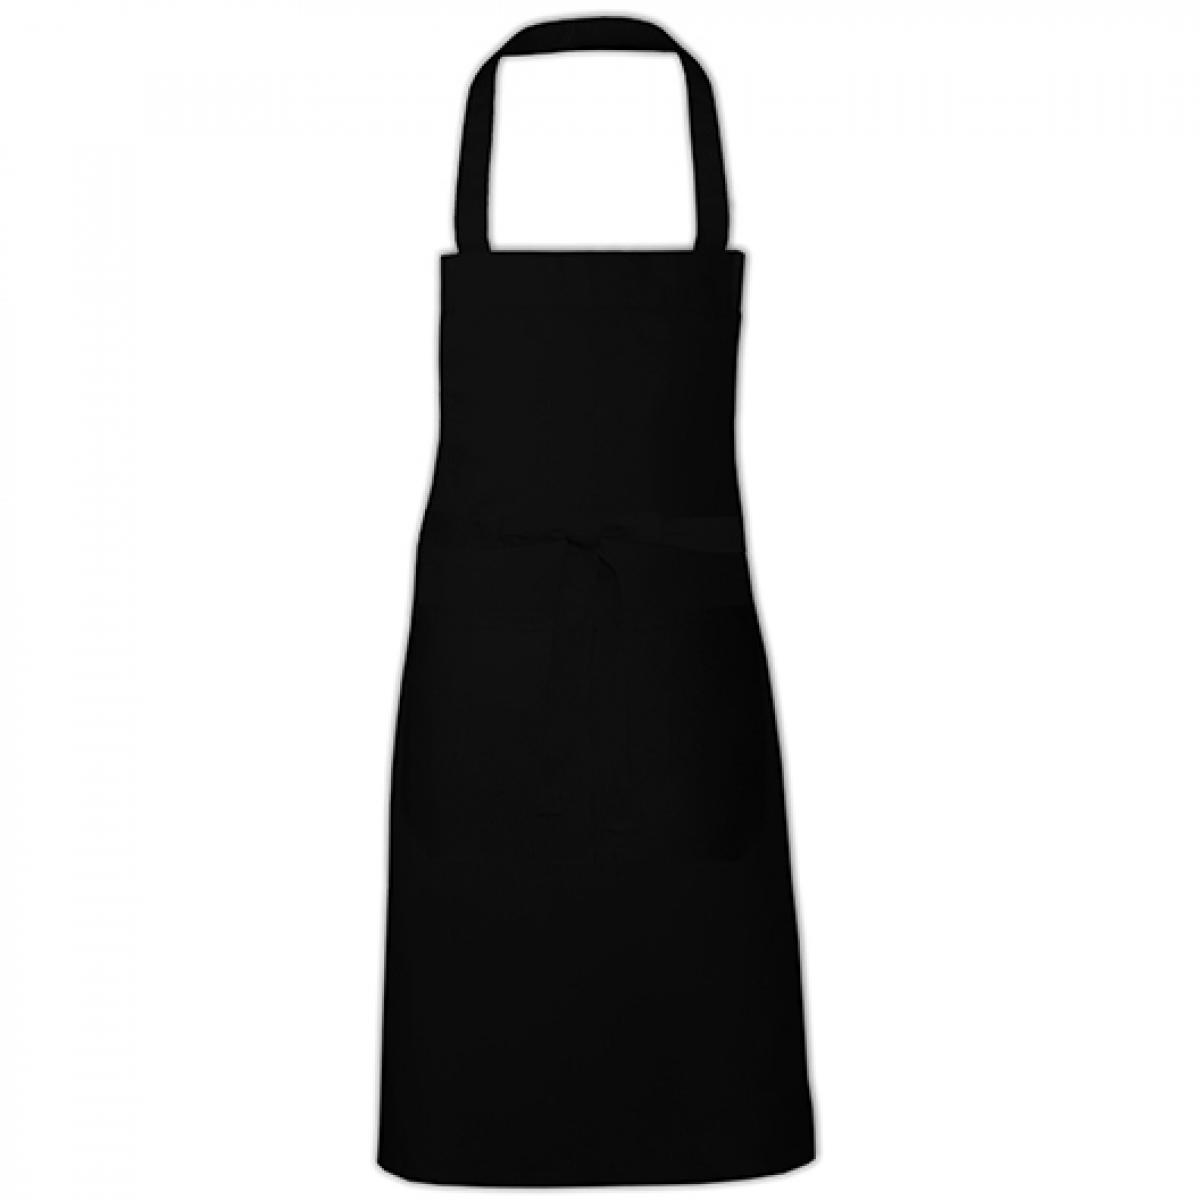 Hersteller: Link Kitchen Wear Herstellernummer: HS8073EU Artikelbezeichnung: Hobby Apron - EU Production - Kochschürze - Waschbar bis 60C Farbe: Black